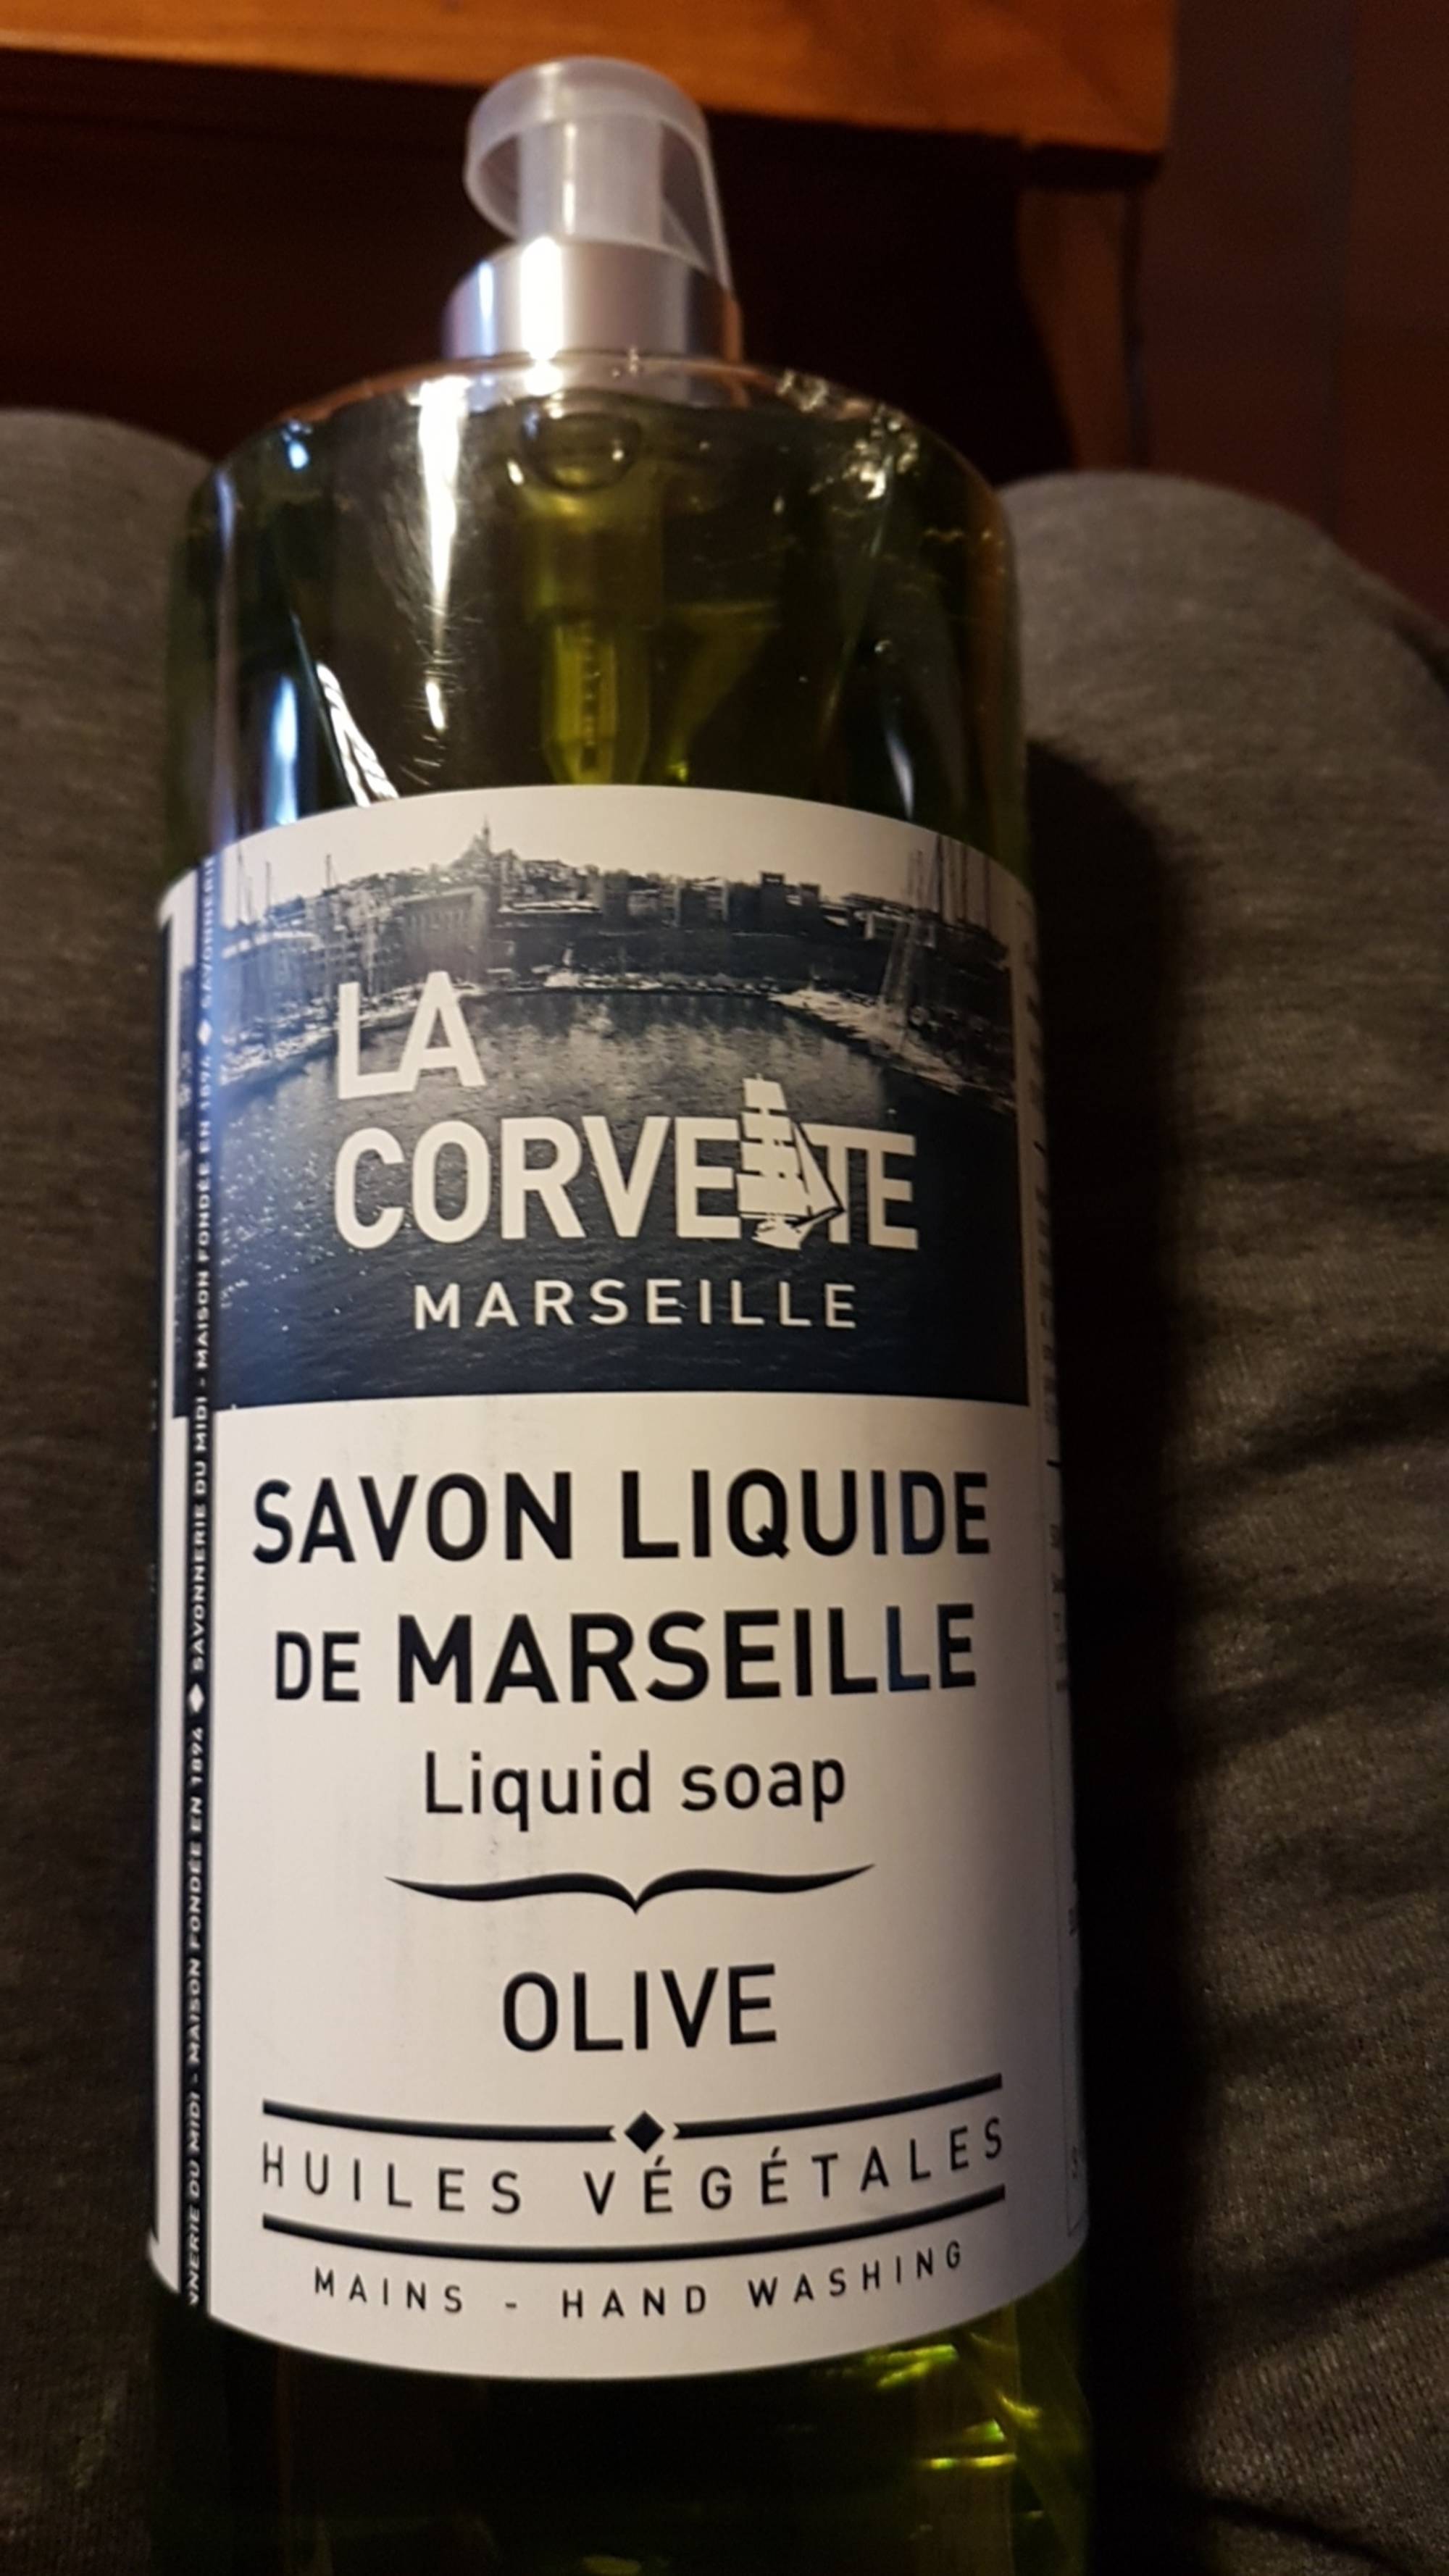 LA CORVETTE - Savon liquide de Marseille - Olive